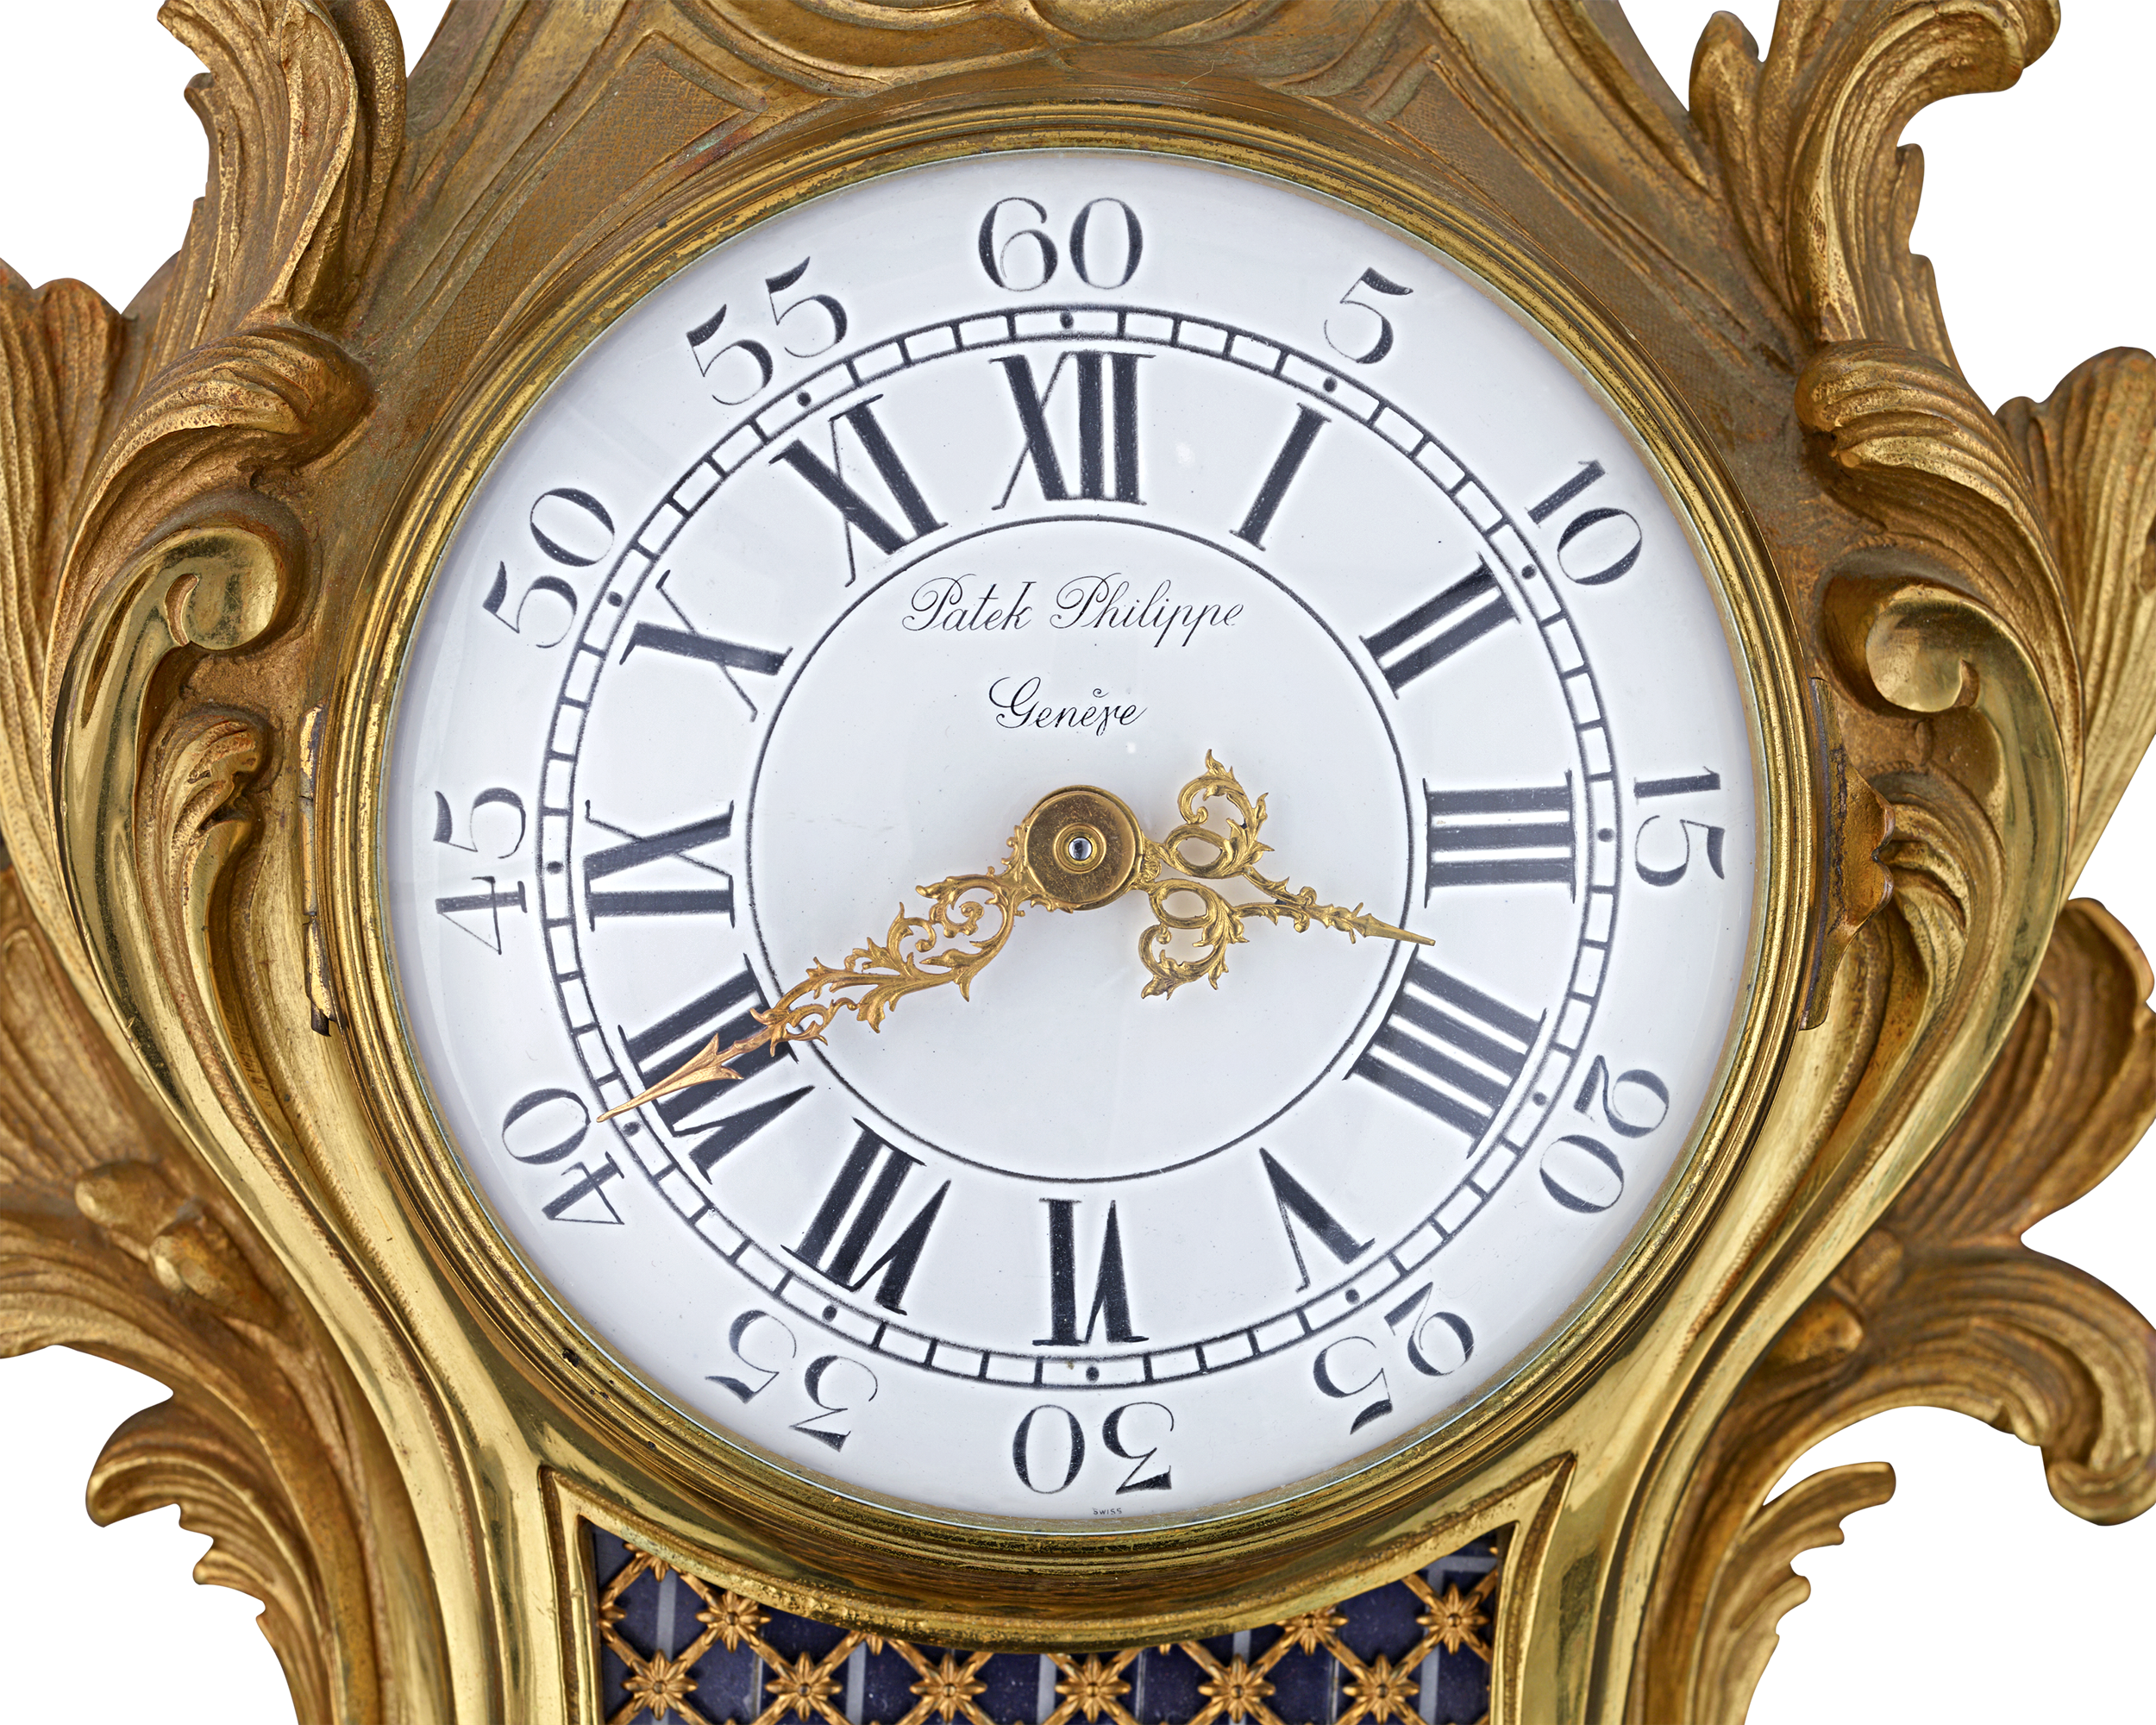 Patek Philippe Cartel Clock